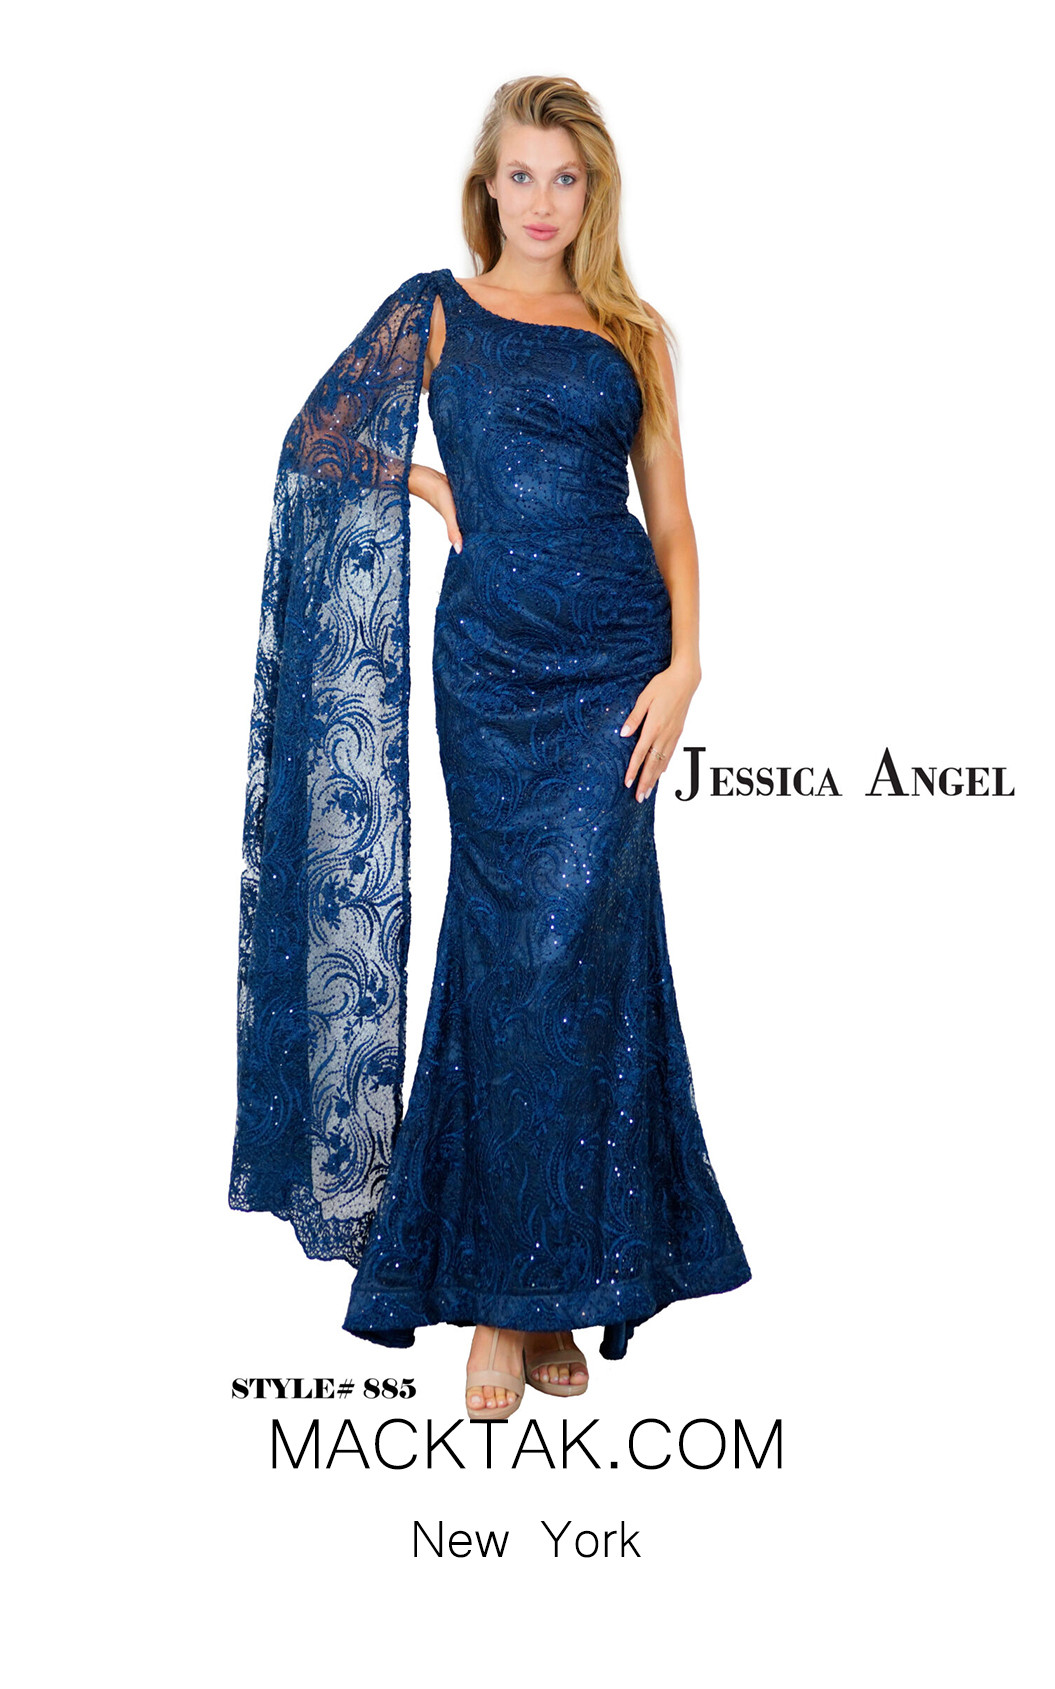 Jessica Angel 885 Dress